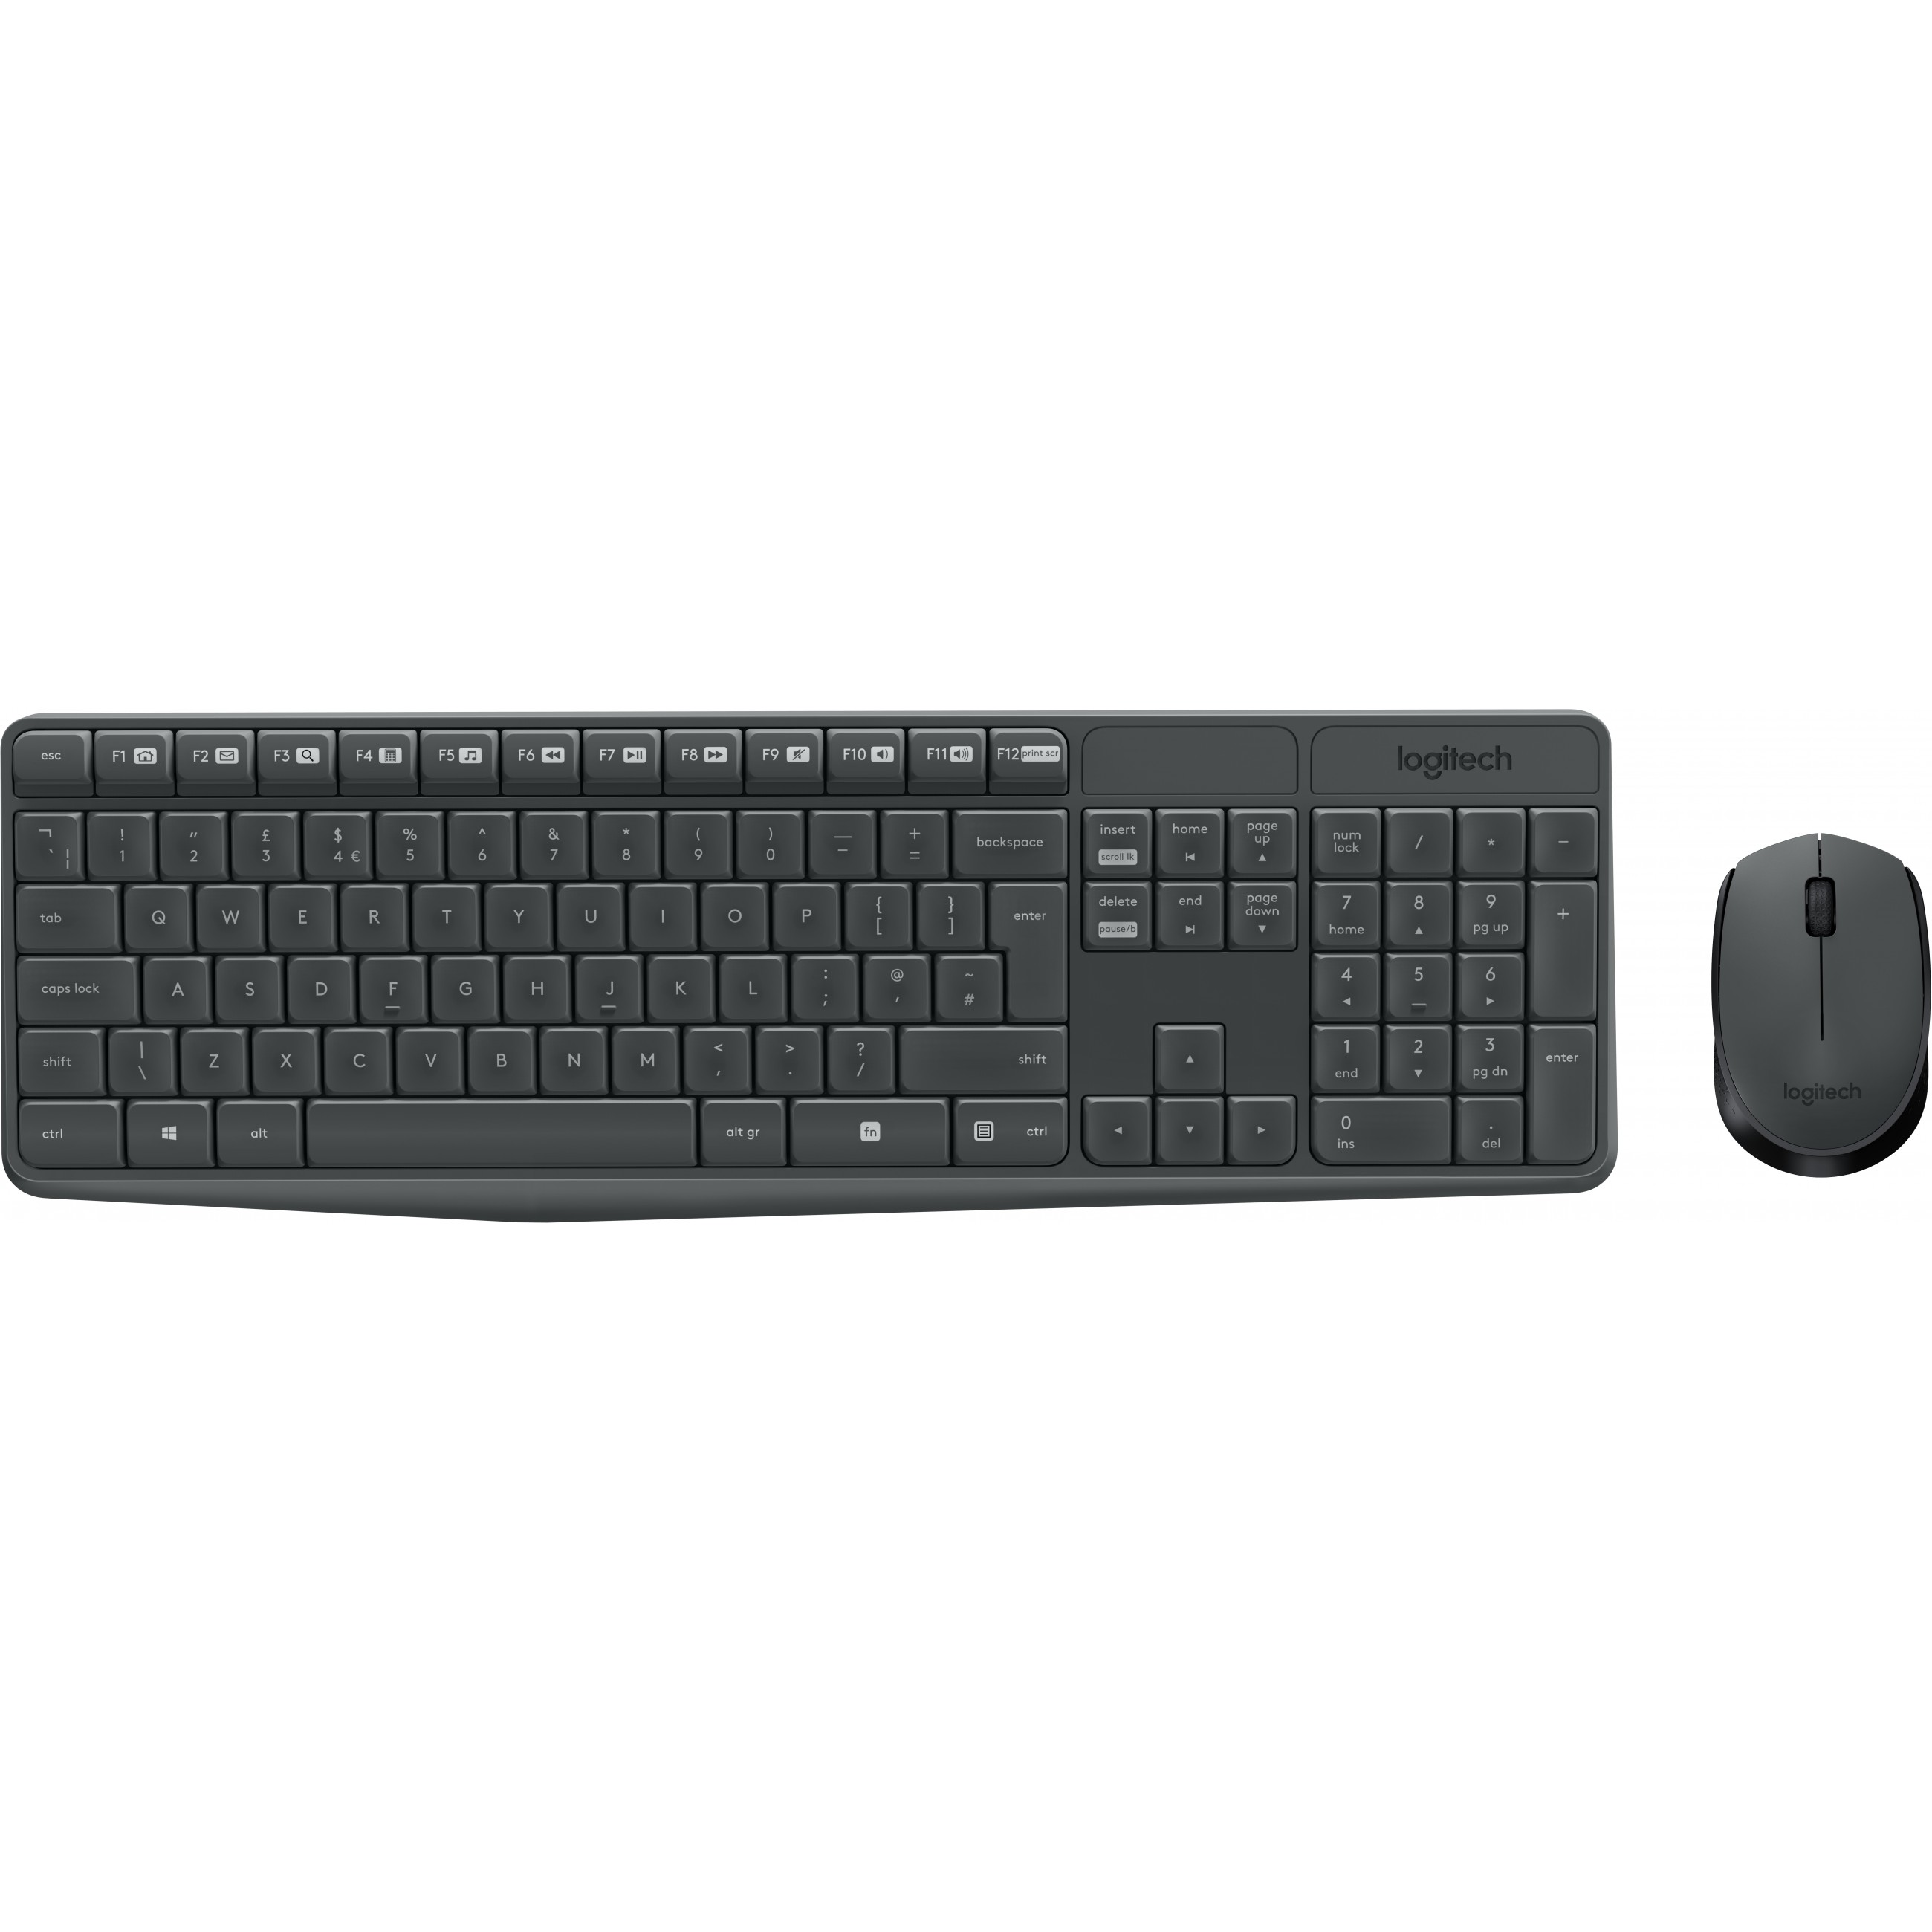 Logitech MK235 keyboard - 920-007905